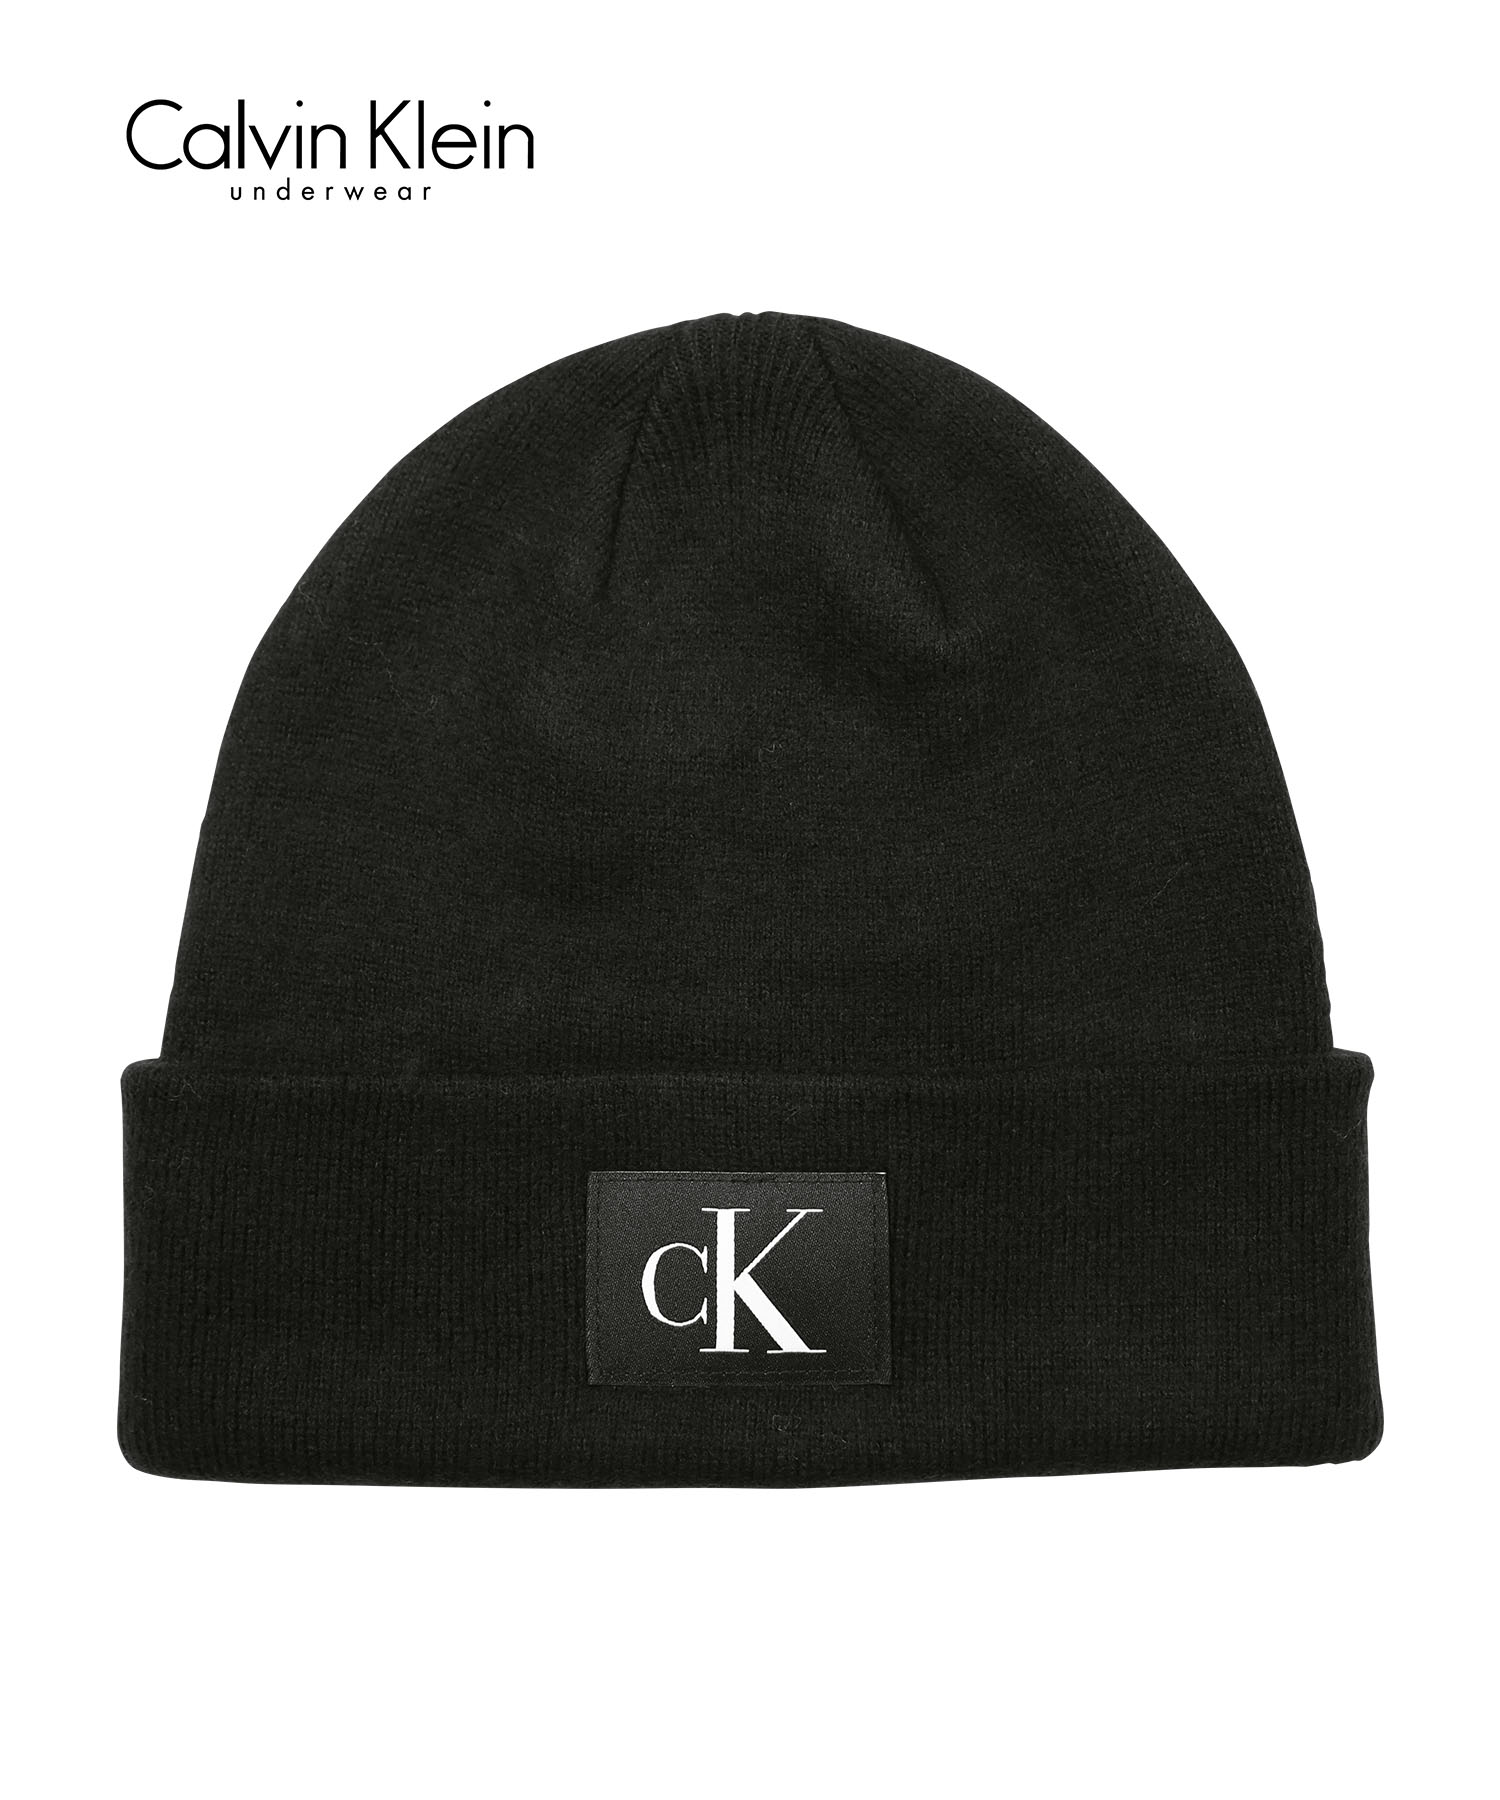 カルバンクライン Calvin Klein ニット帽 ユニセックス 帽子 ビーニー 